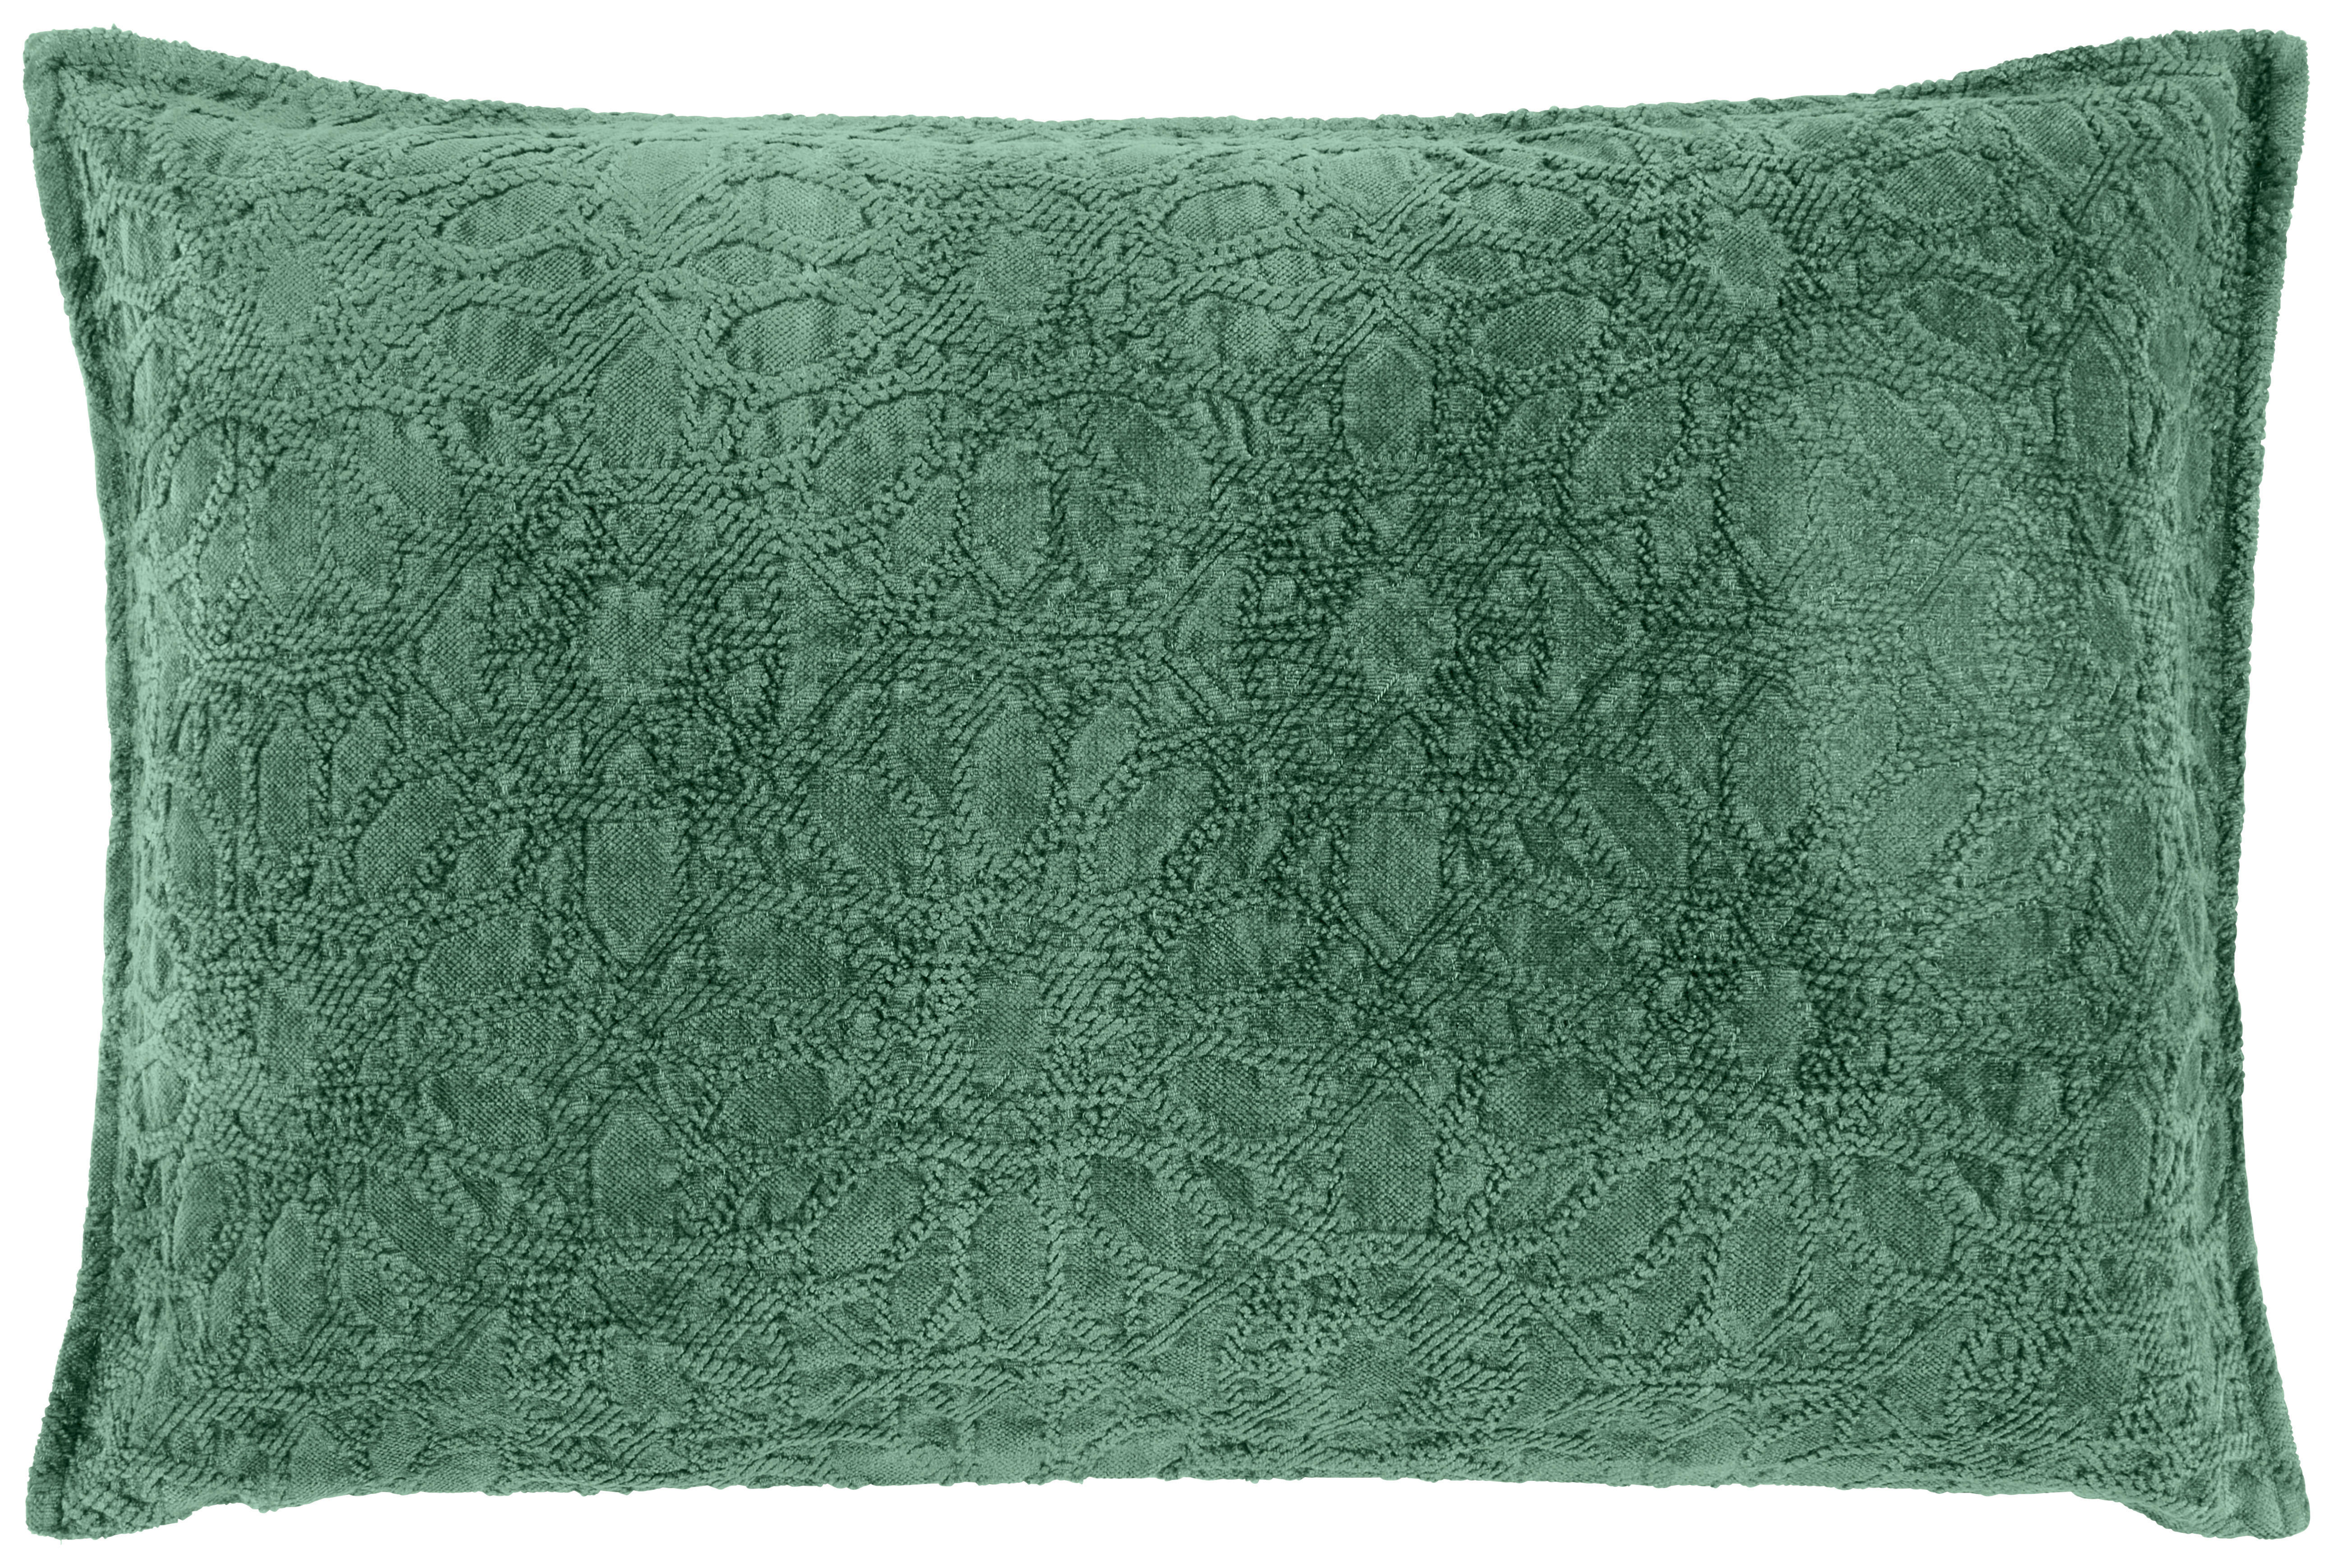 PRYDNADSKUDDE 40/60 cm  - grön, Lifestyle, textil (40/60cm) - Novel